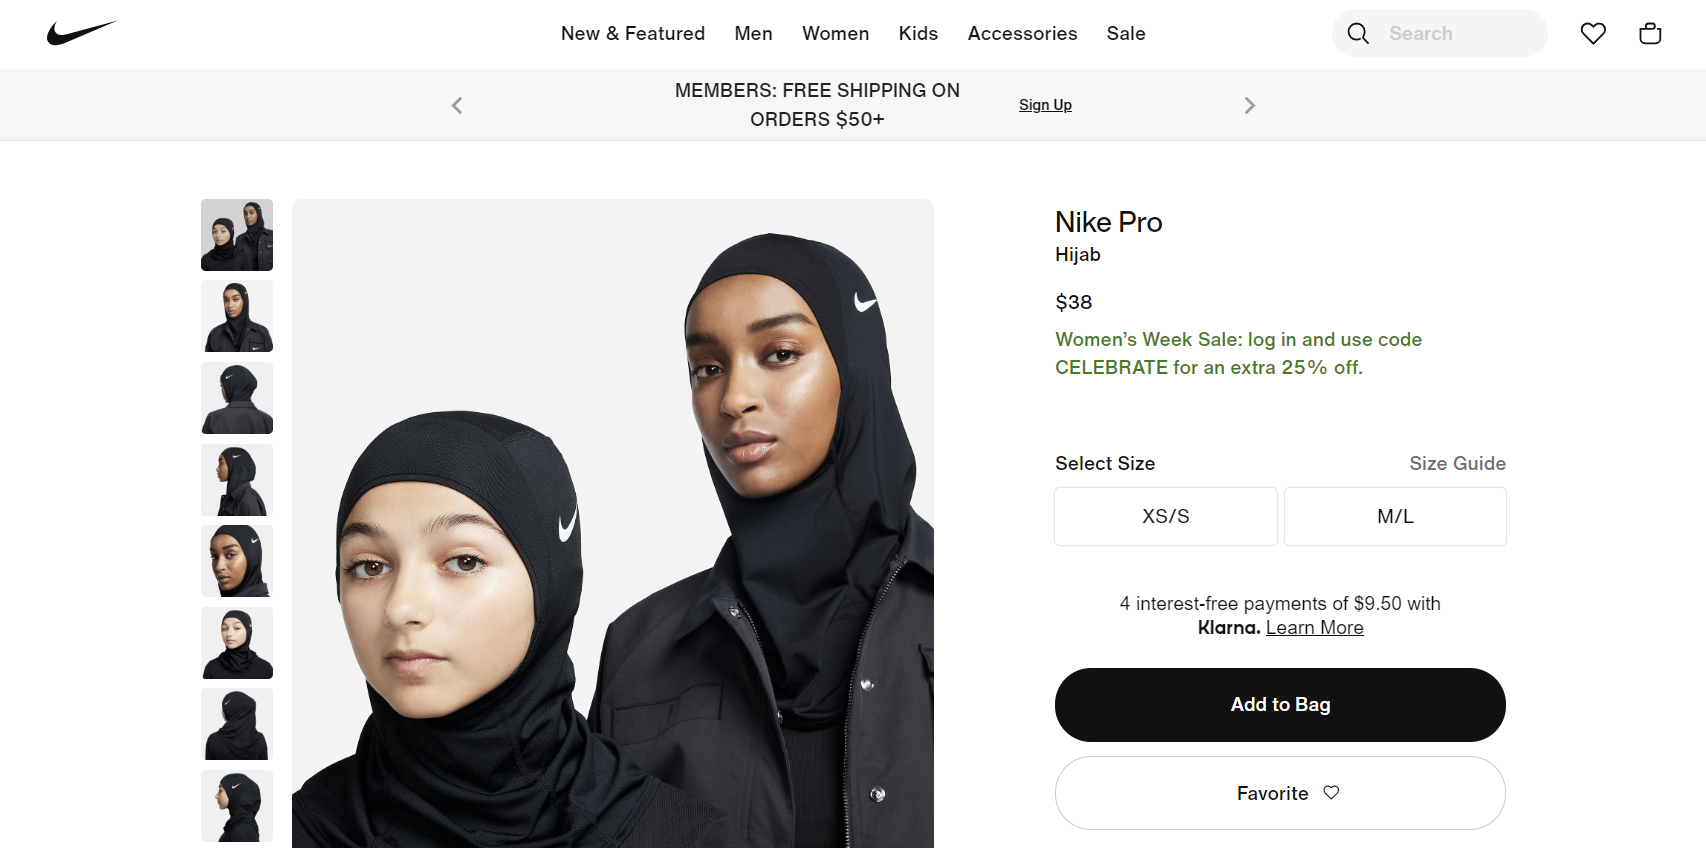 Two models wearing Nike Pro Hijabs posing for a sportswear line